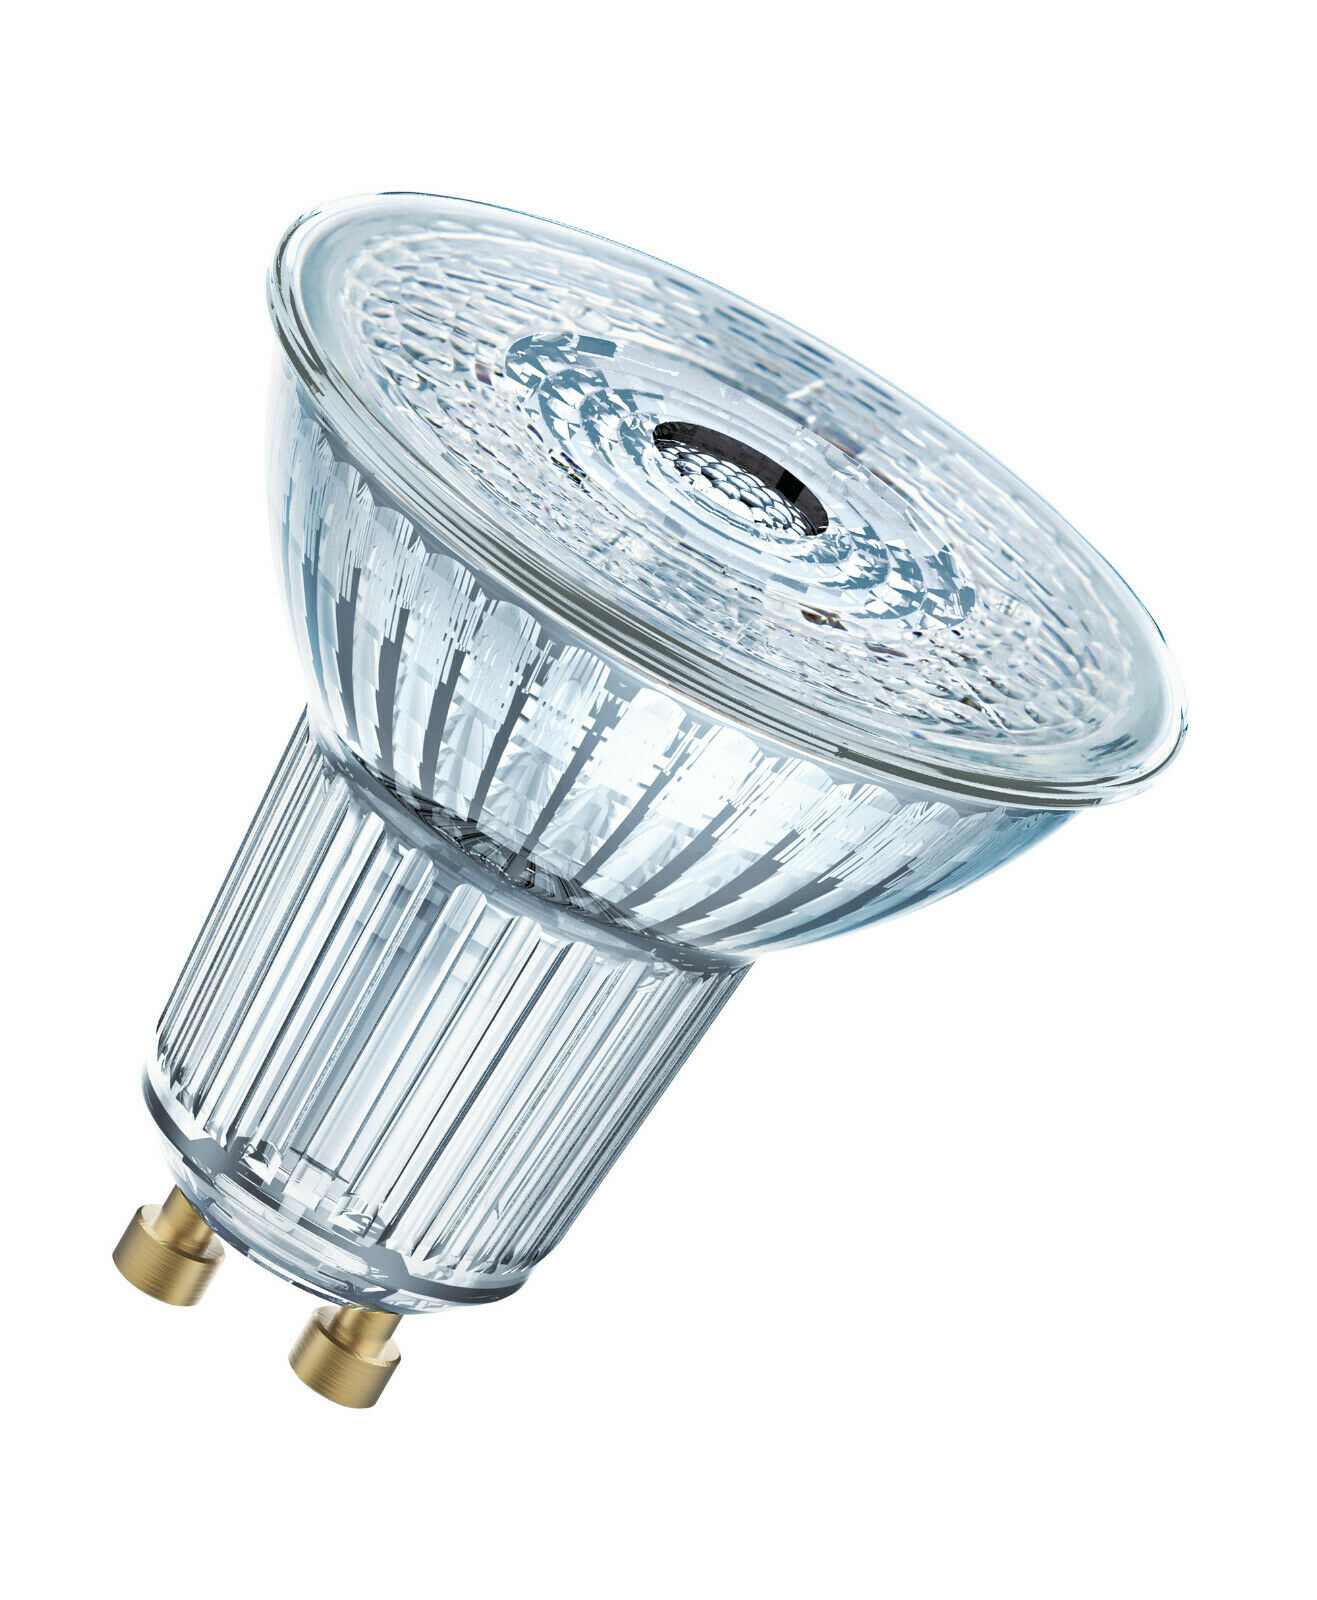 Osram LED GU10 Reflektorlampe 2,6 Watt 36 Grad 840 neutralweiß